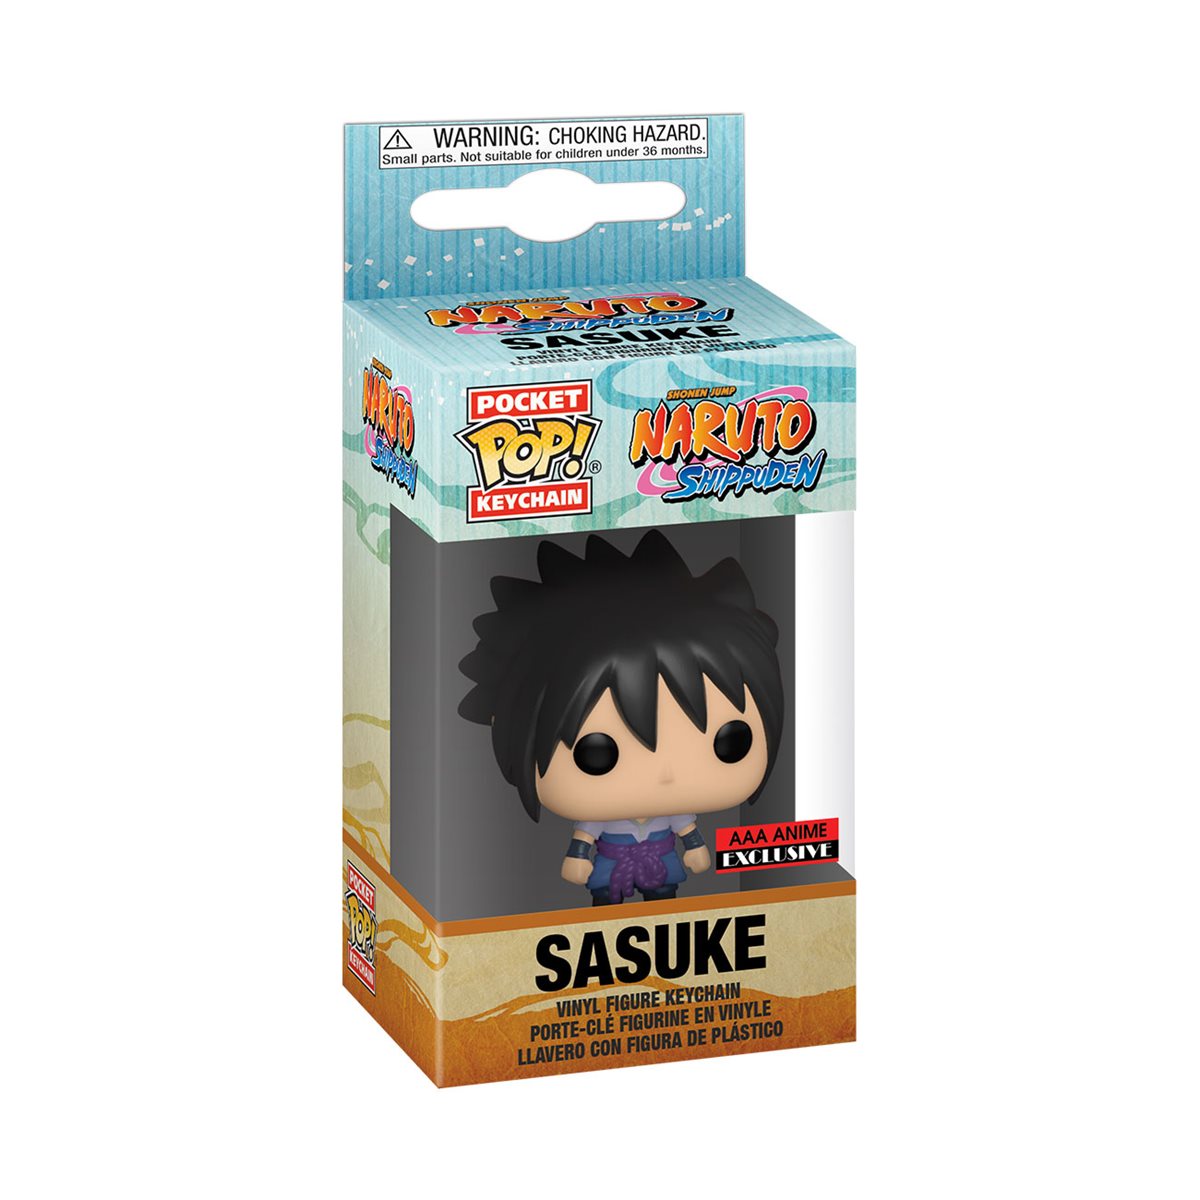 Naruto Shippuden Sasuke Uchiha Pocket 